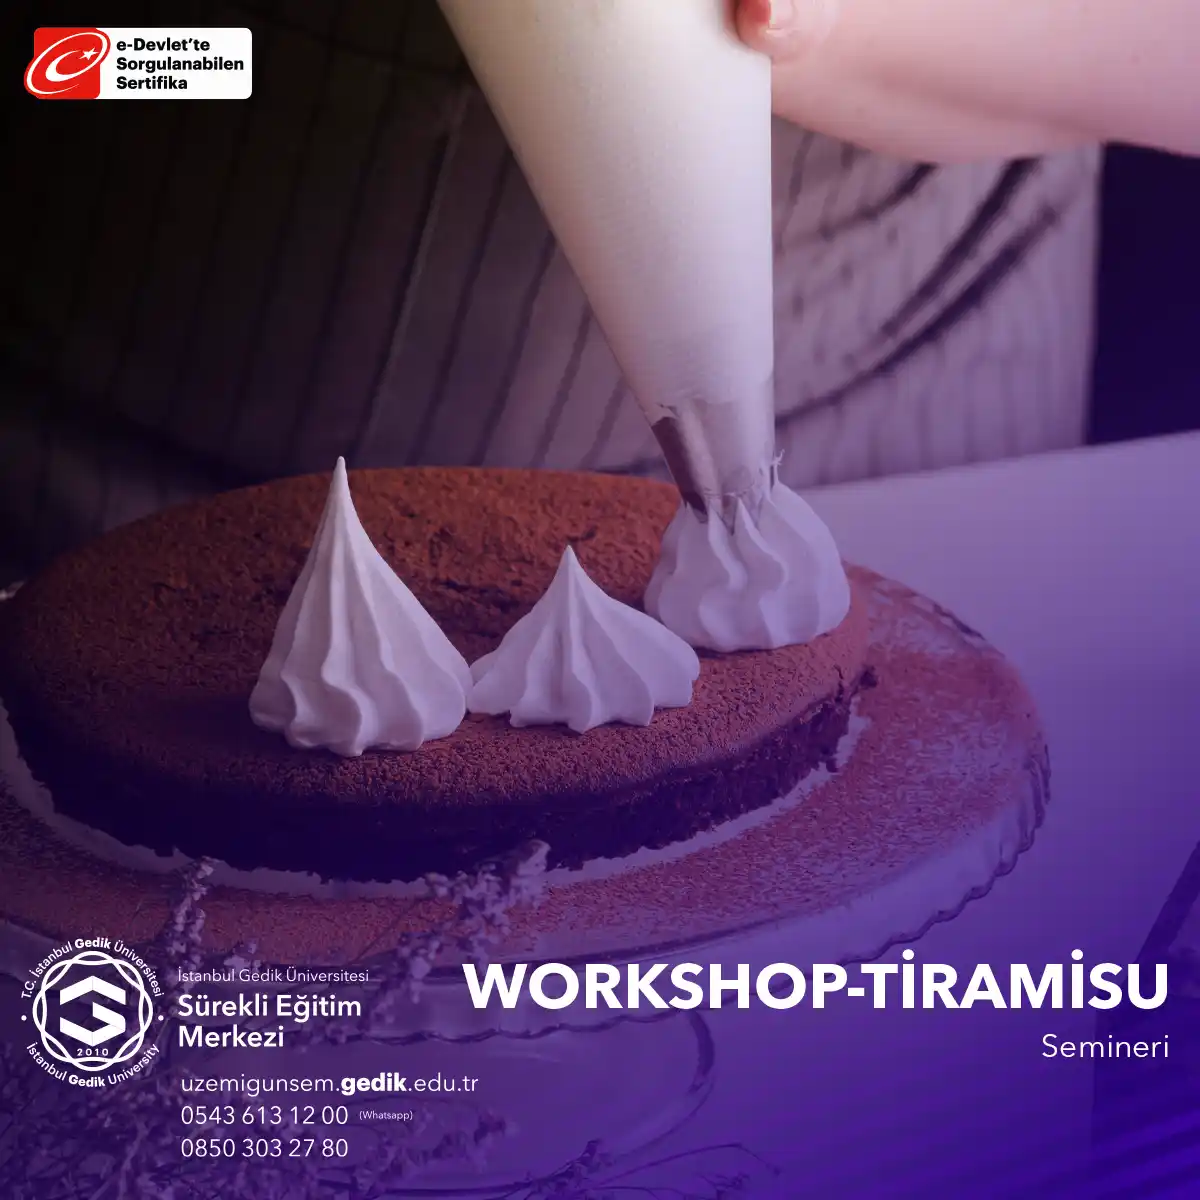 Tiramisu Semineri, İtalyan mutfağına ilgi duyan kişilere veya tatlı yapmayı öğrenmek isteyenlere yönelik keyifli bir eğitimdir. 